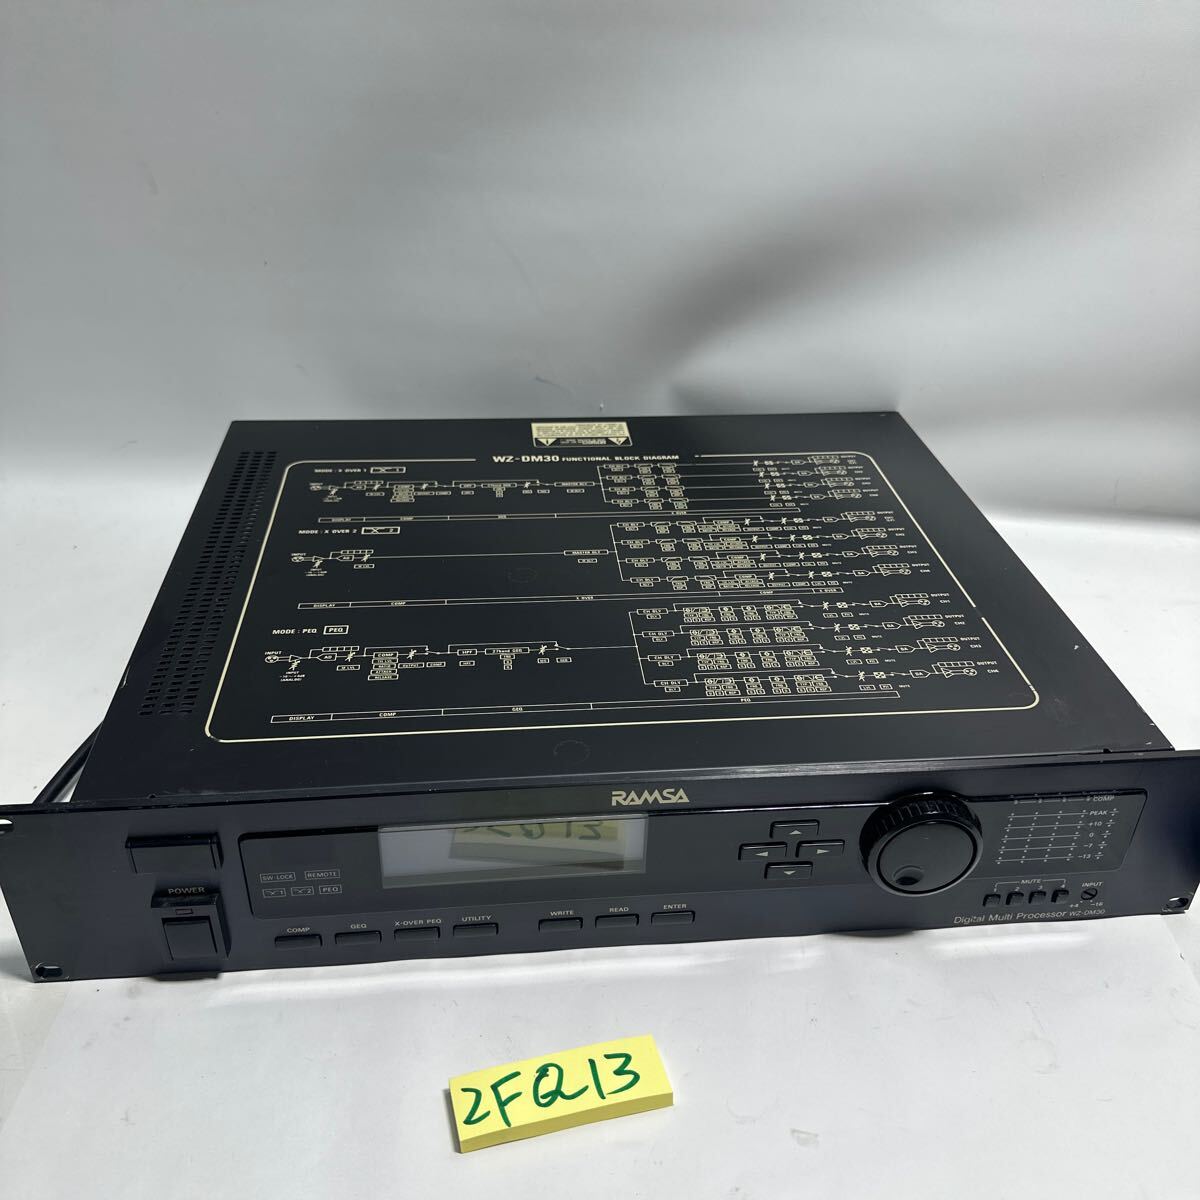 「2FQ13」Panasonic パナソニック WZ-DM30 ramsa ラムサ デジタルマルチプロセッサー 本体 動作品 現状出品の画像1